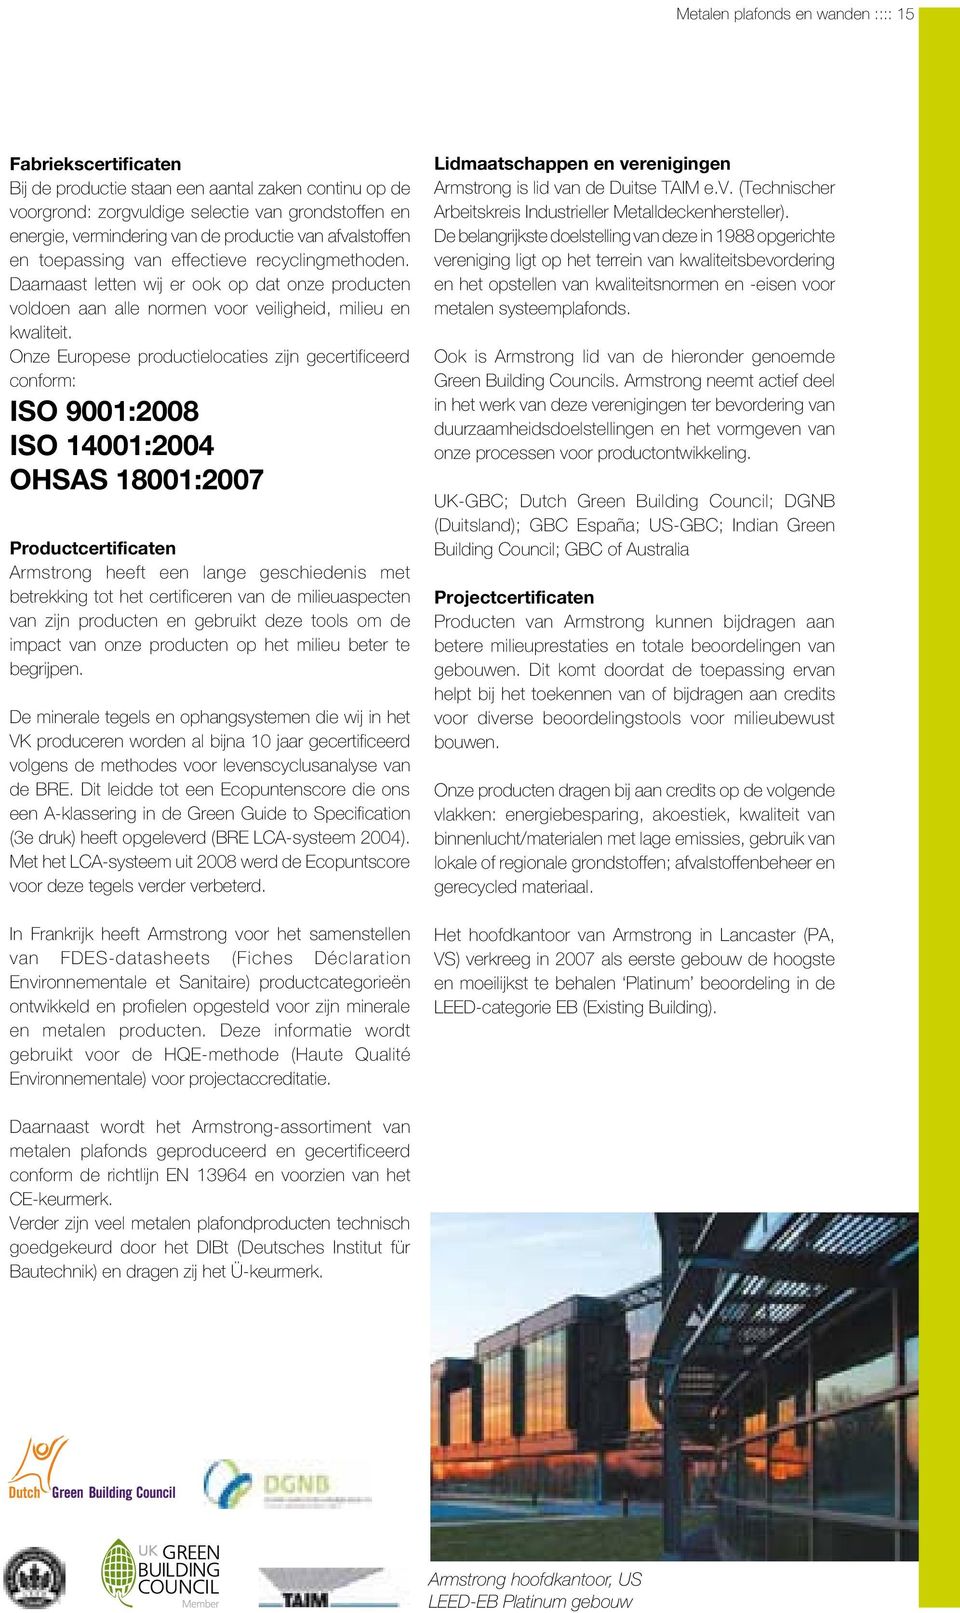 Onze Europese productielocaties zijn gecertificeerd conform: ISO 9001:2008 ISO 14001:2004 OHSAS 18001:2007 Productcertificaten Armstrong heeft een lange geschiedenis met betrekking tot het